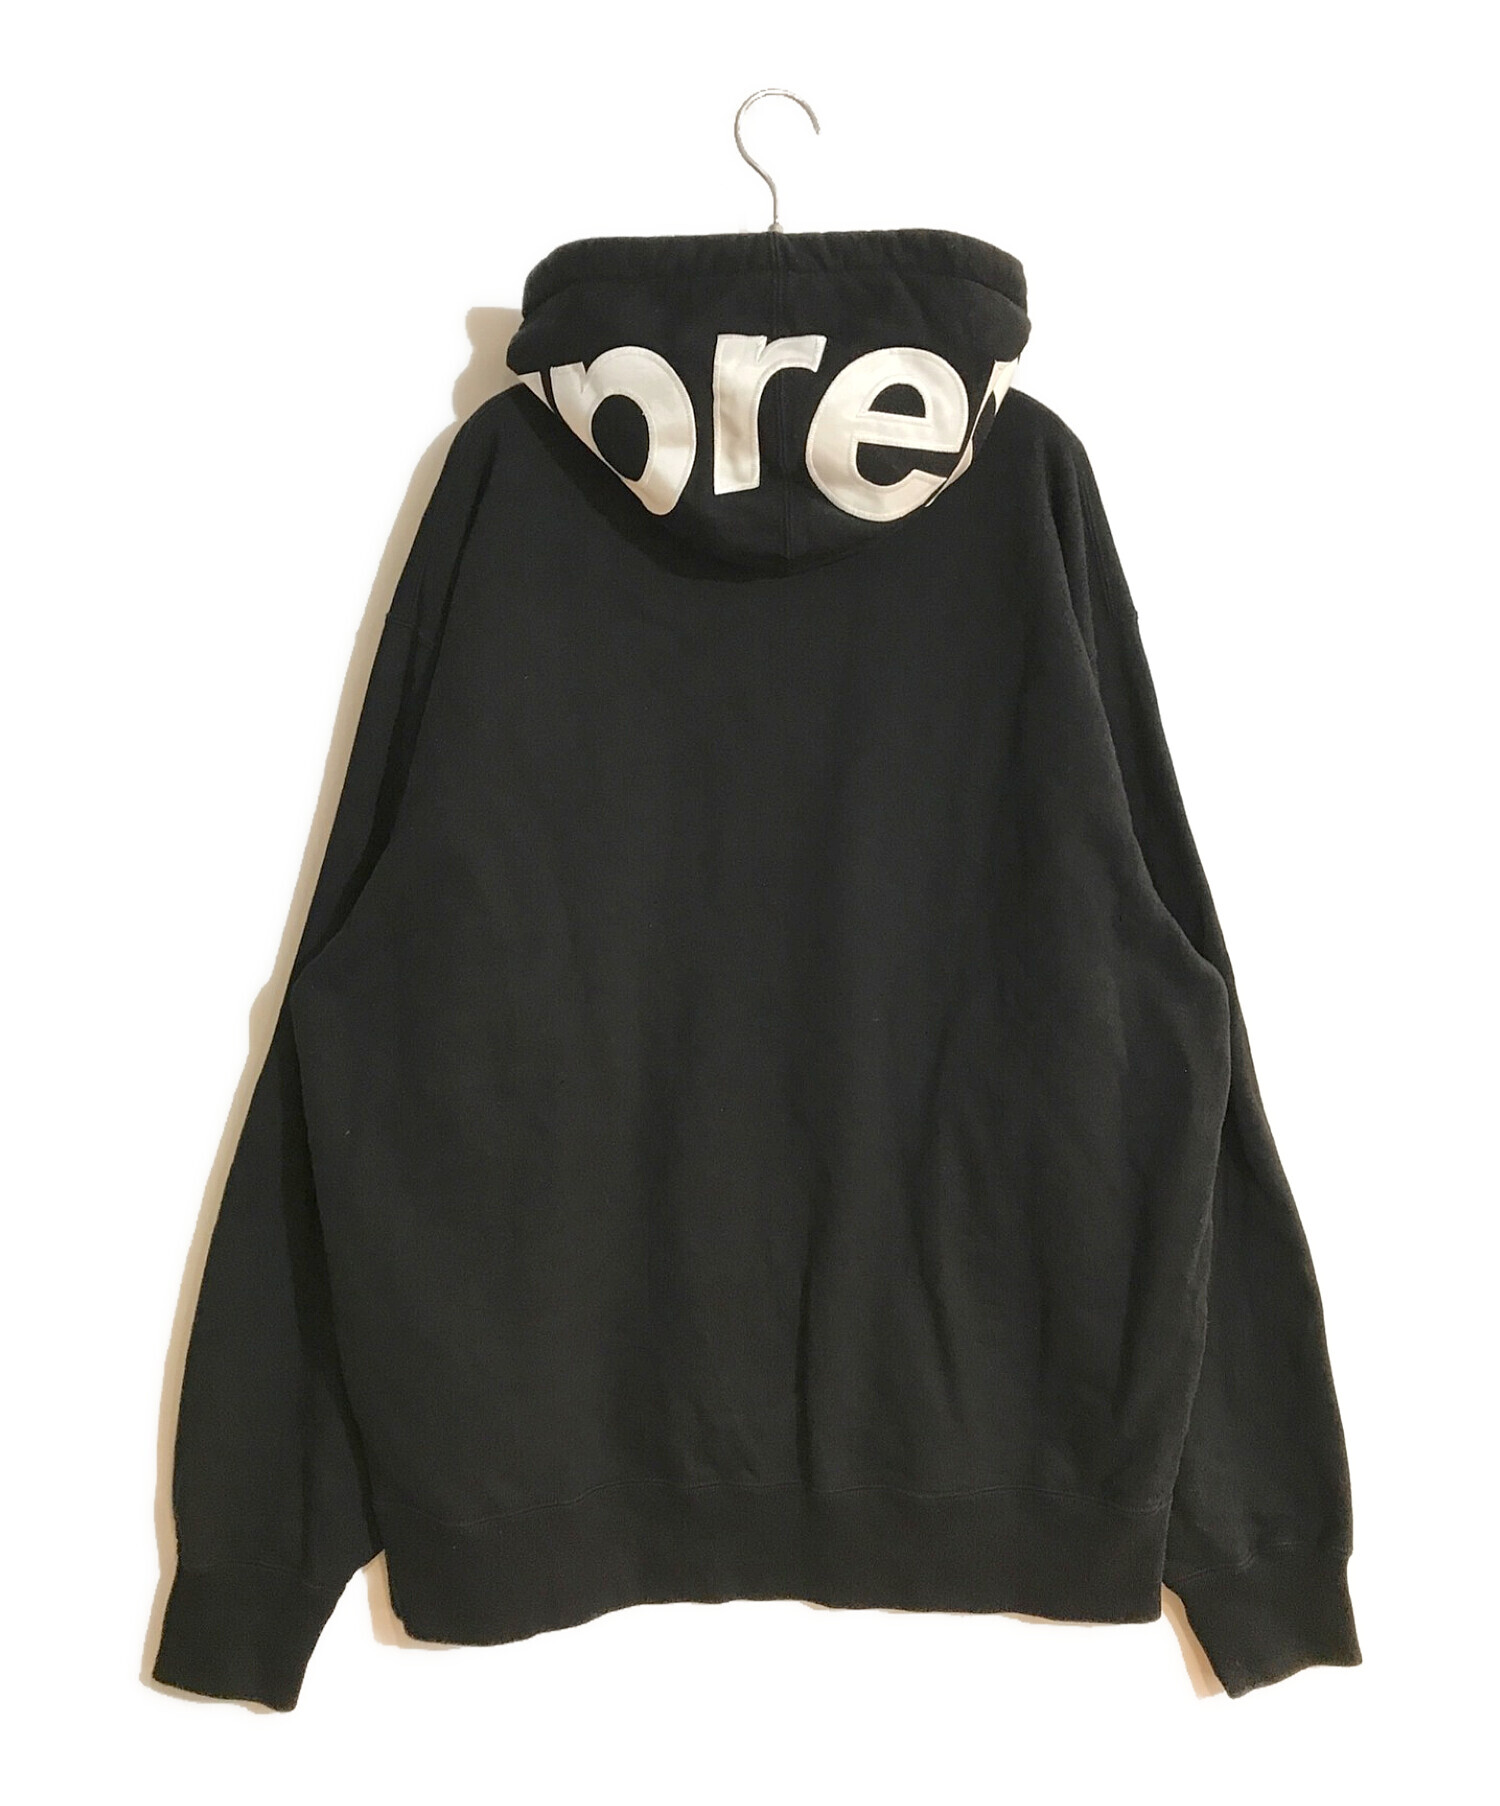 Supreme (シュプリーム) Contrast Hooded Sweatshirt/コントラストフーディースウェットシャツ ブラック  サイズ:SIZE XL